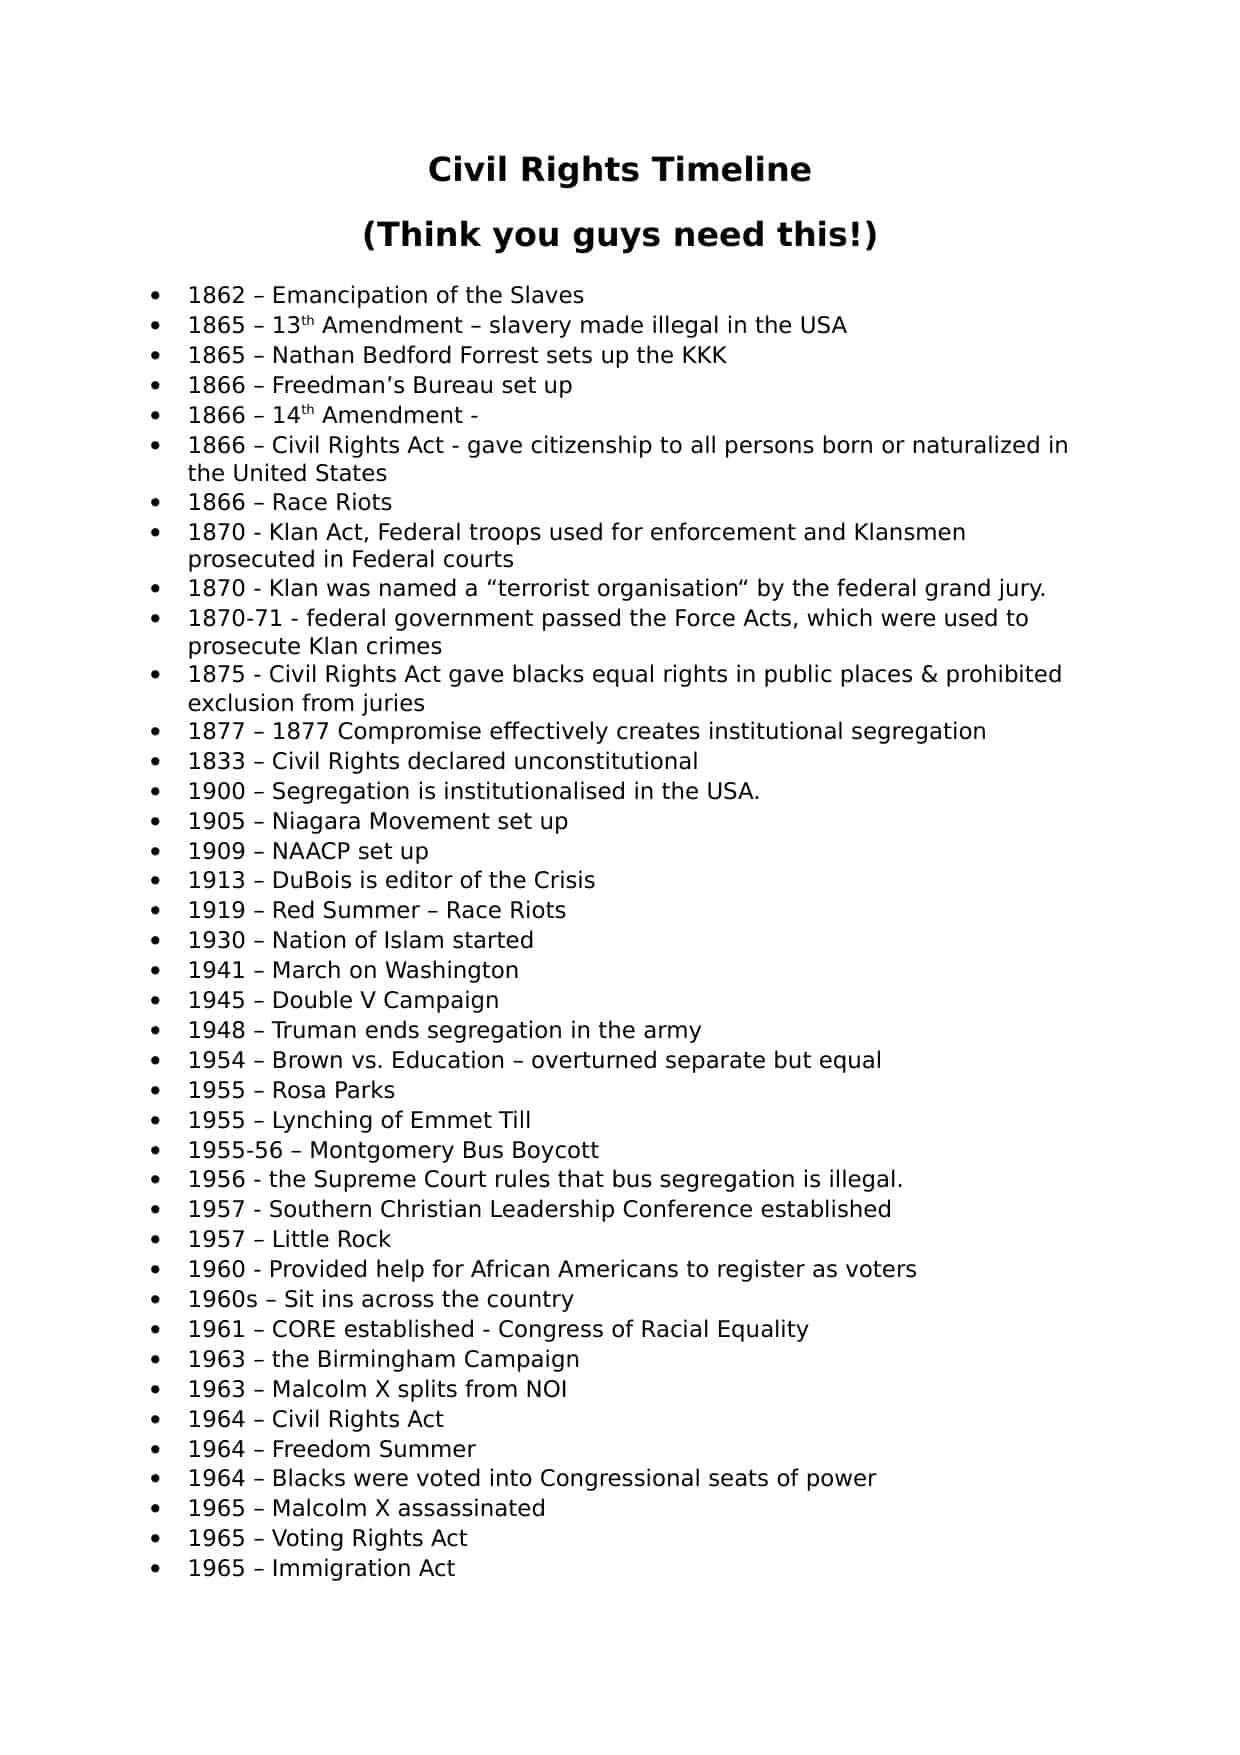 Civil Rights Timeline Worksheet Within Civil War Timeline Worksheet